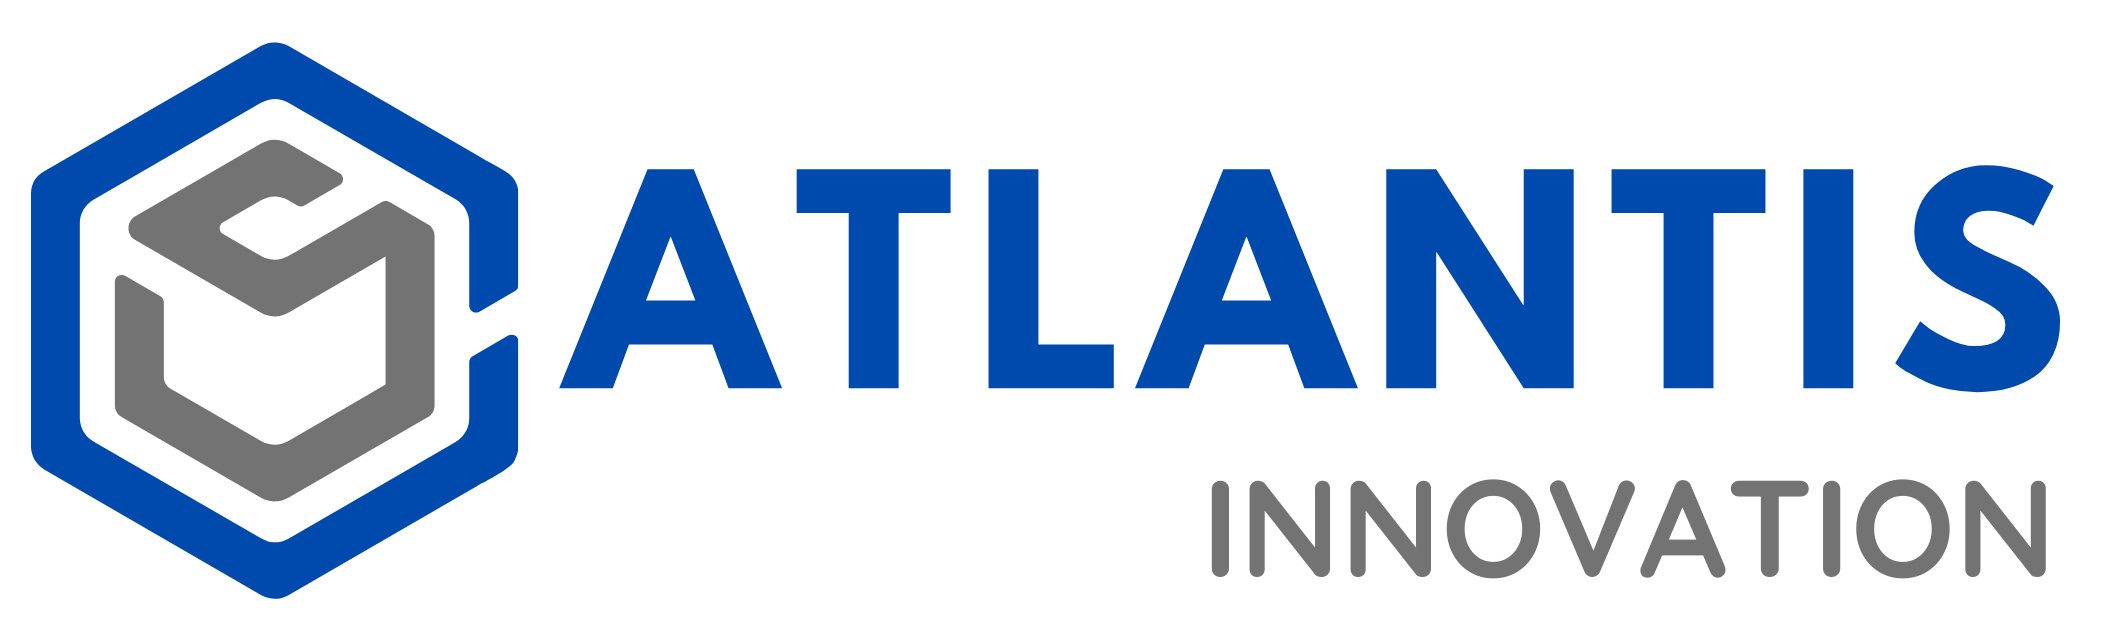 Atlantis Innovation Logo